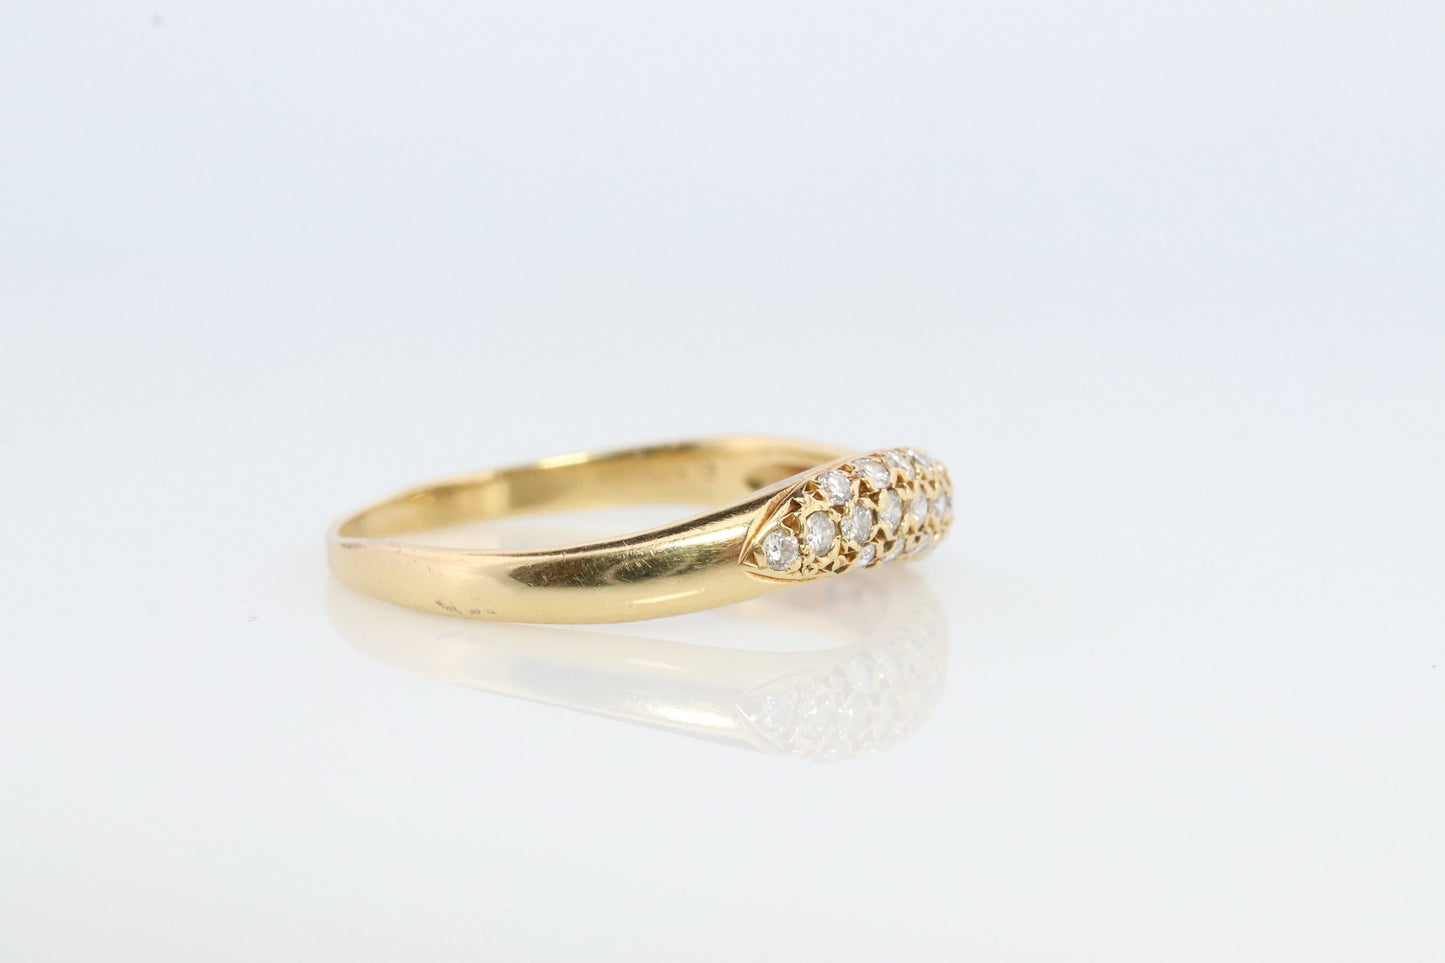 Mikimoto Ring. Vintage 18k Gold Mikimoto Diamond Pave ring. Mikimoto Diamond Cluster Bombe band. Mikimoto wave.